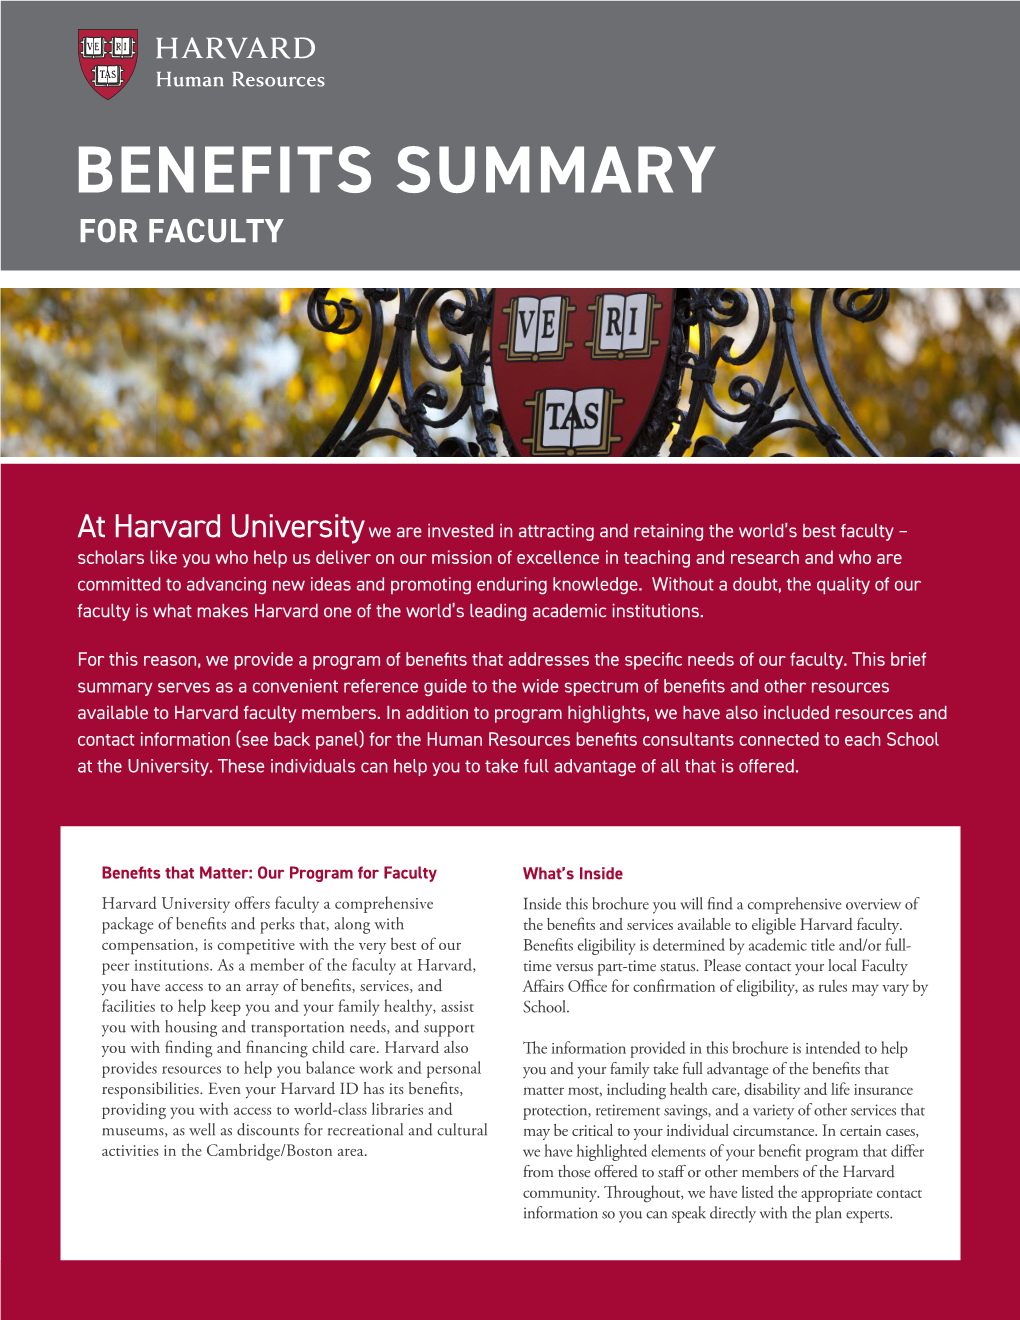 Faculty Benefits Summary